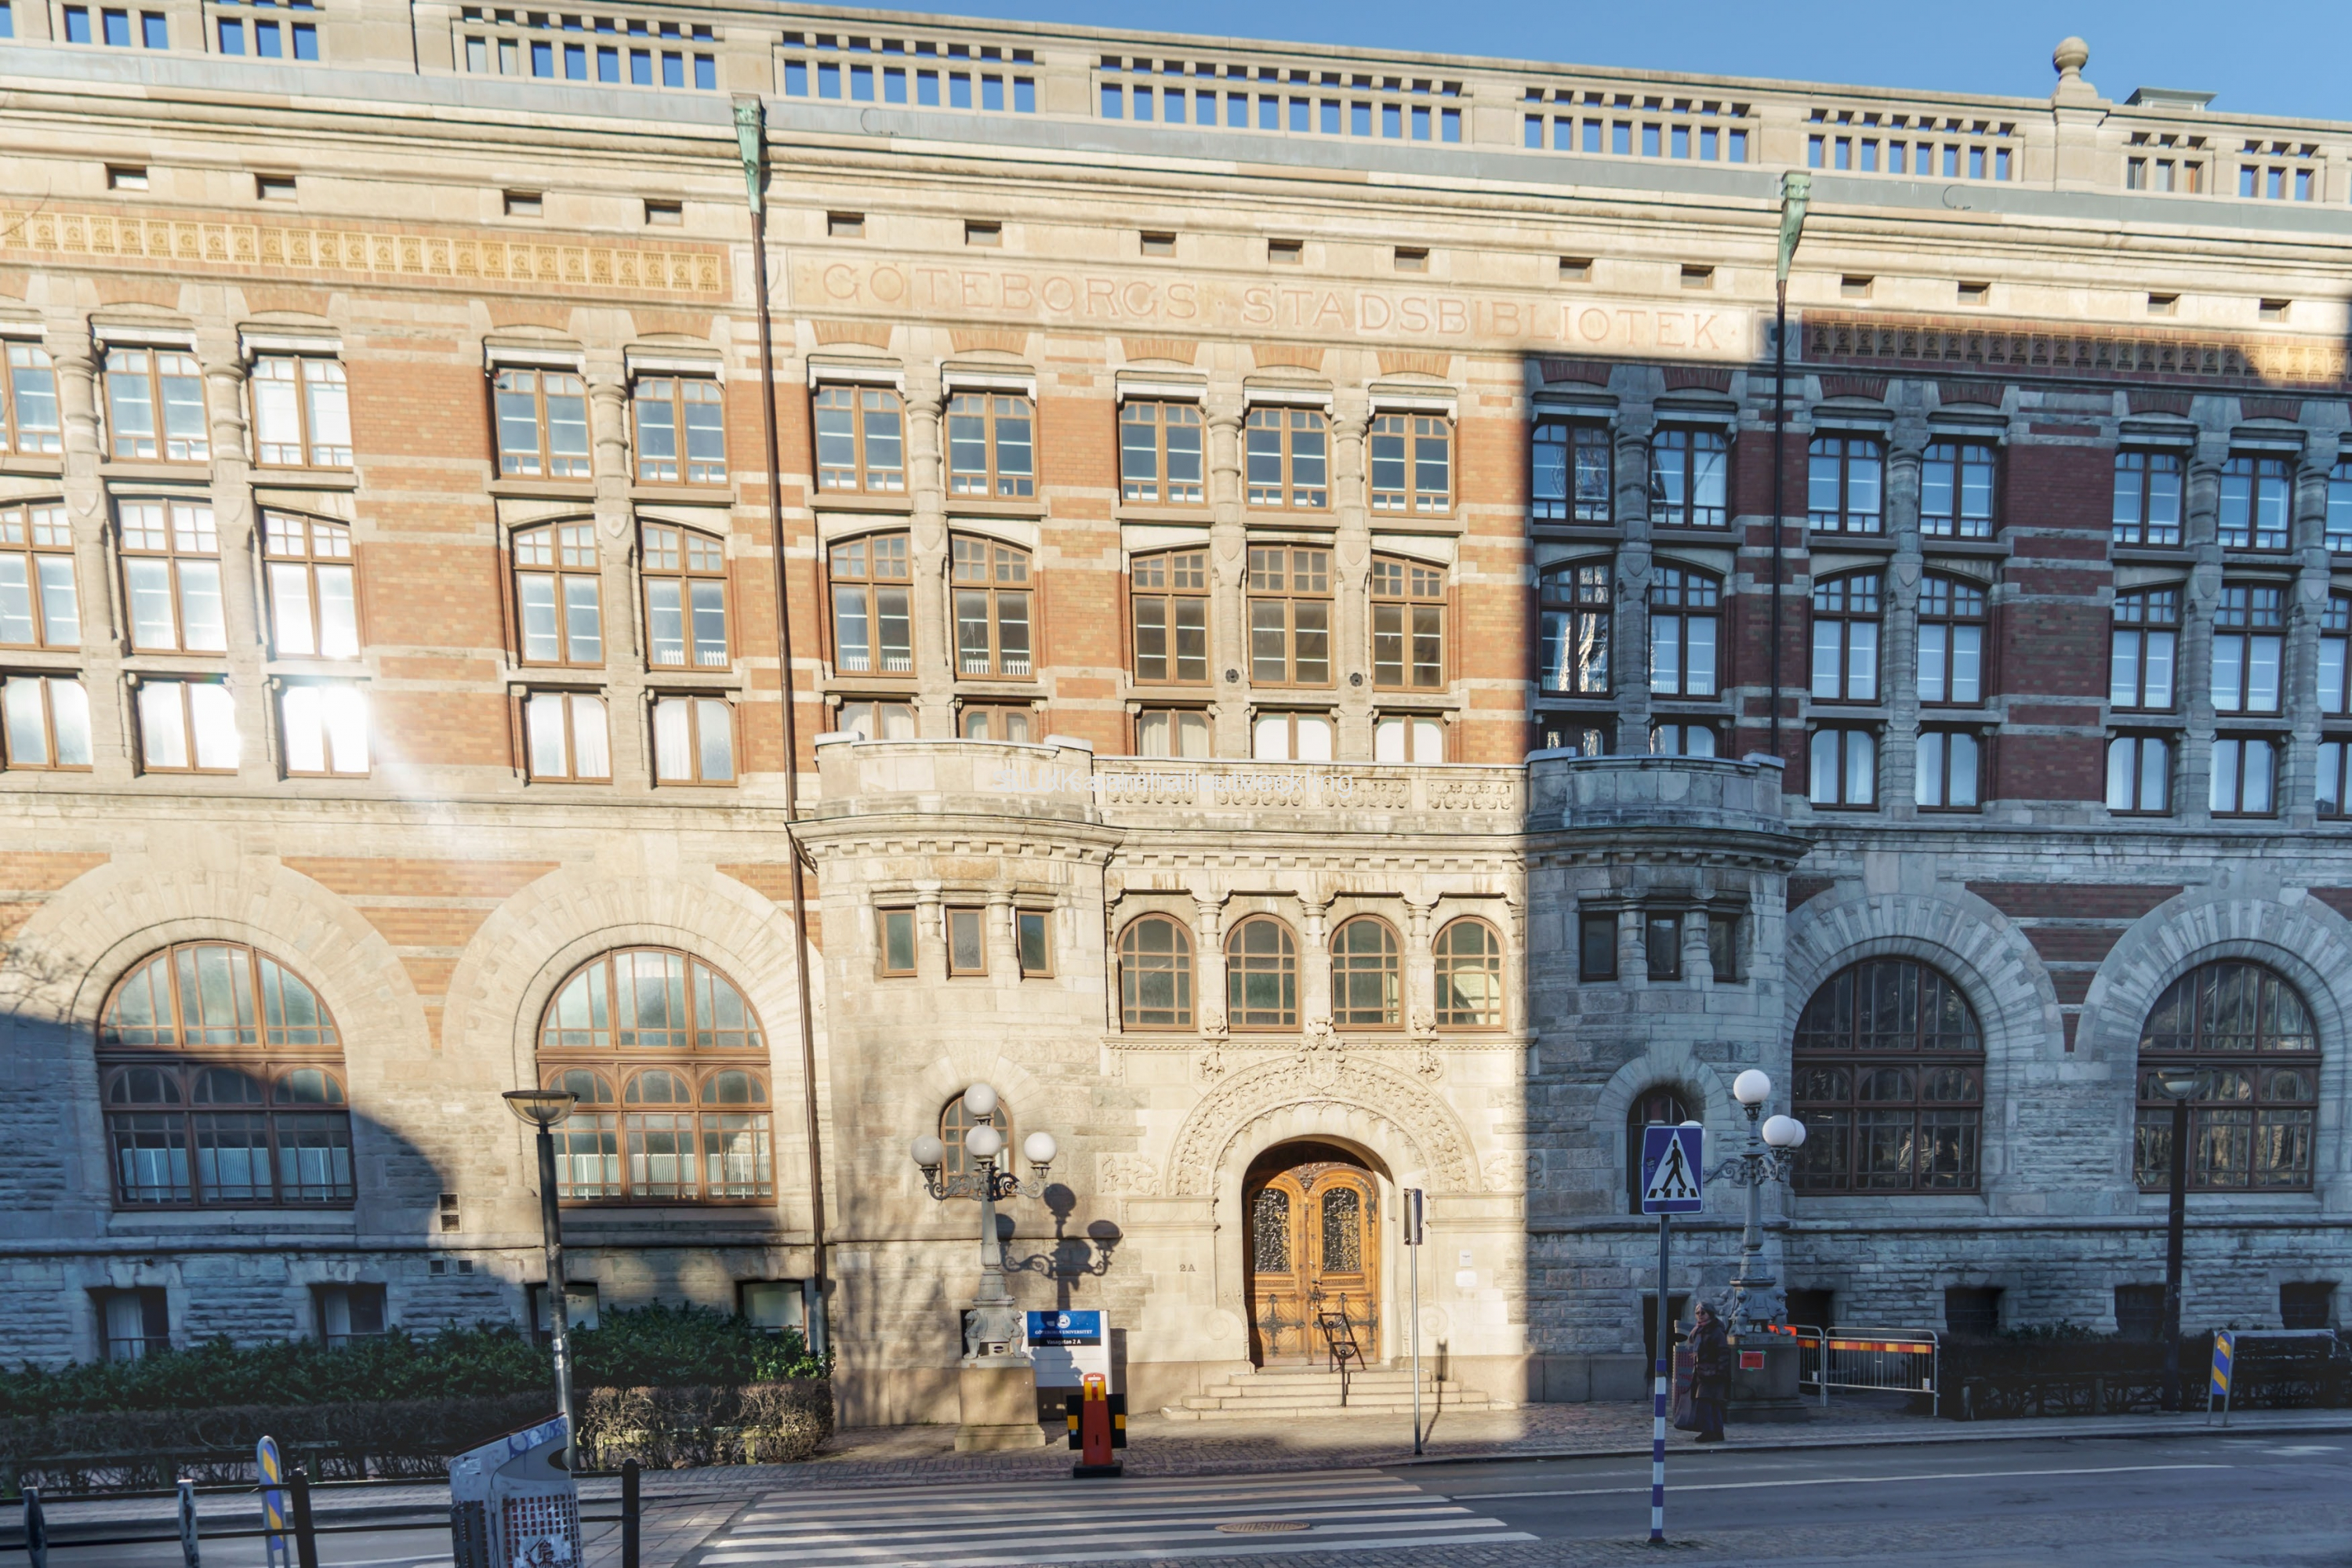 Universitetsbiblioteket för samhällsfrågor är utrymt sedan när Västlänken Haga började att byggas.  Nu vet inte universitetet när de kommer att få flytta tillbaks, med anledning av förseningarna med västlänken Haga.  Handelshögskolans skugga faller på byggnaden.